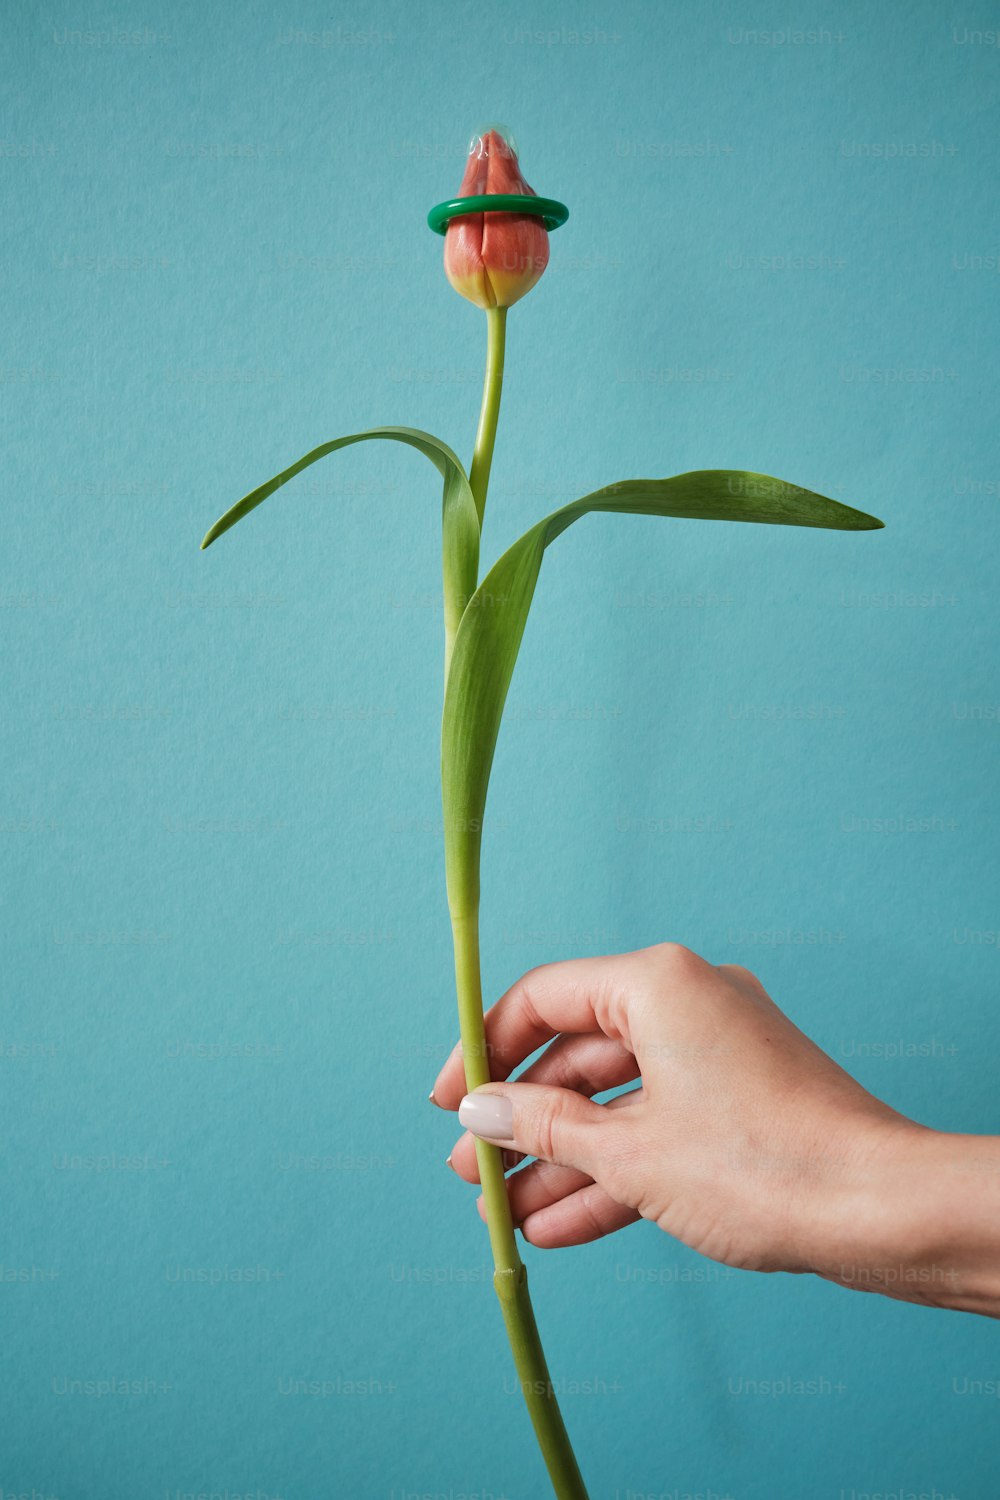 uma pessoa segurando uma flor na mão